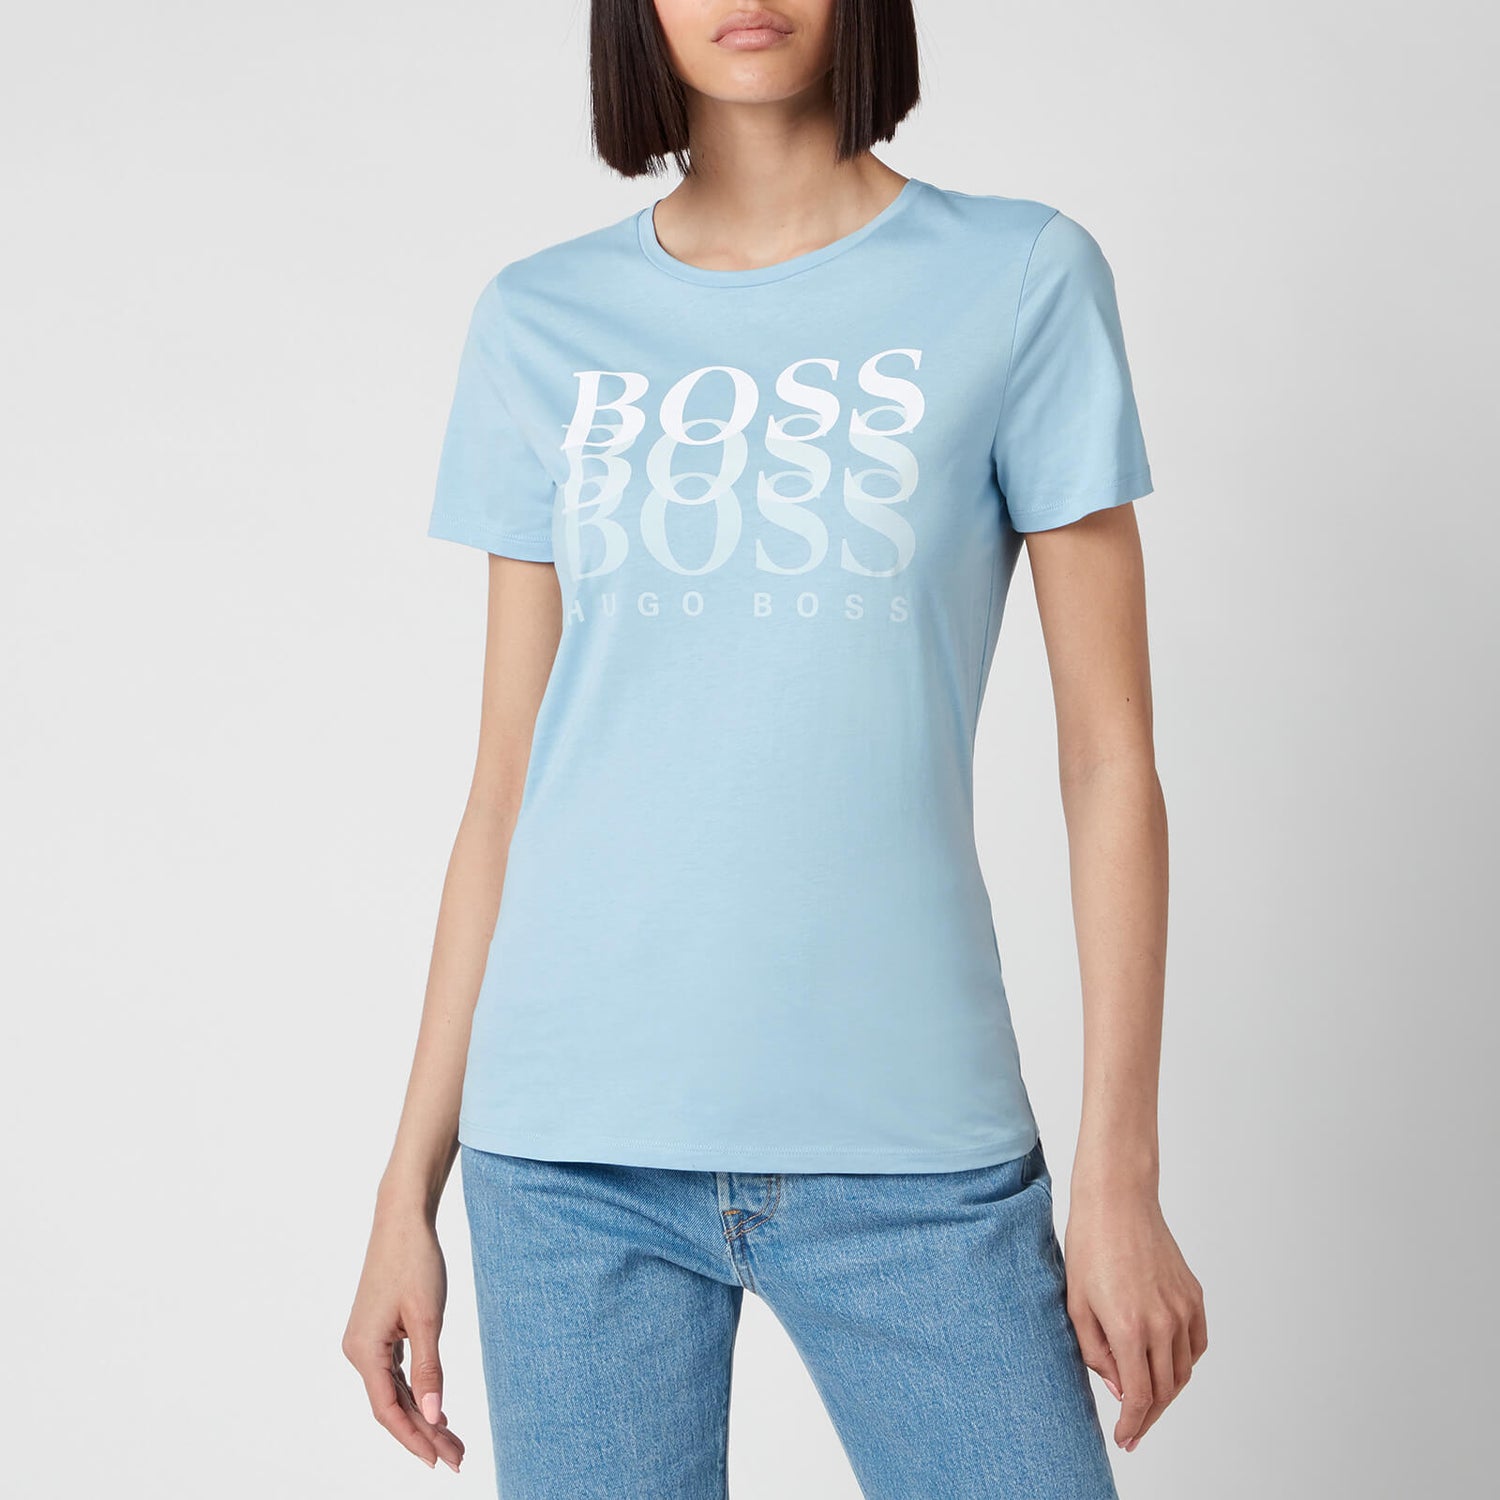 BOSS Women's Eloga1 T-Shirt - Light/Pastel Blue